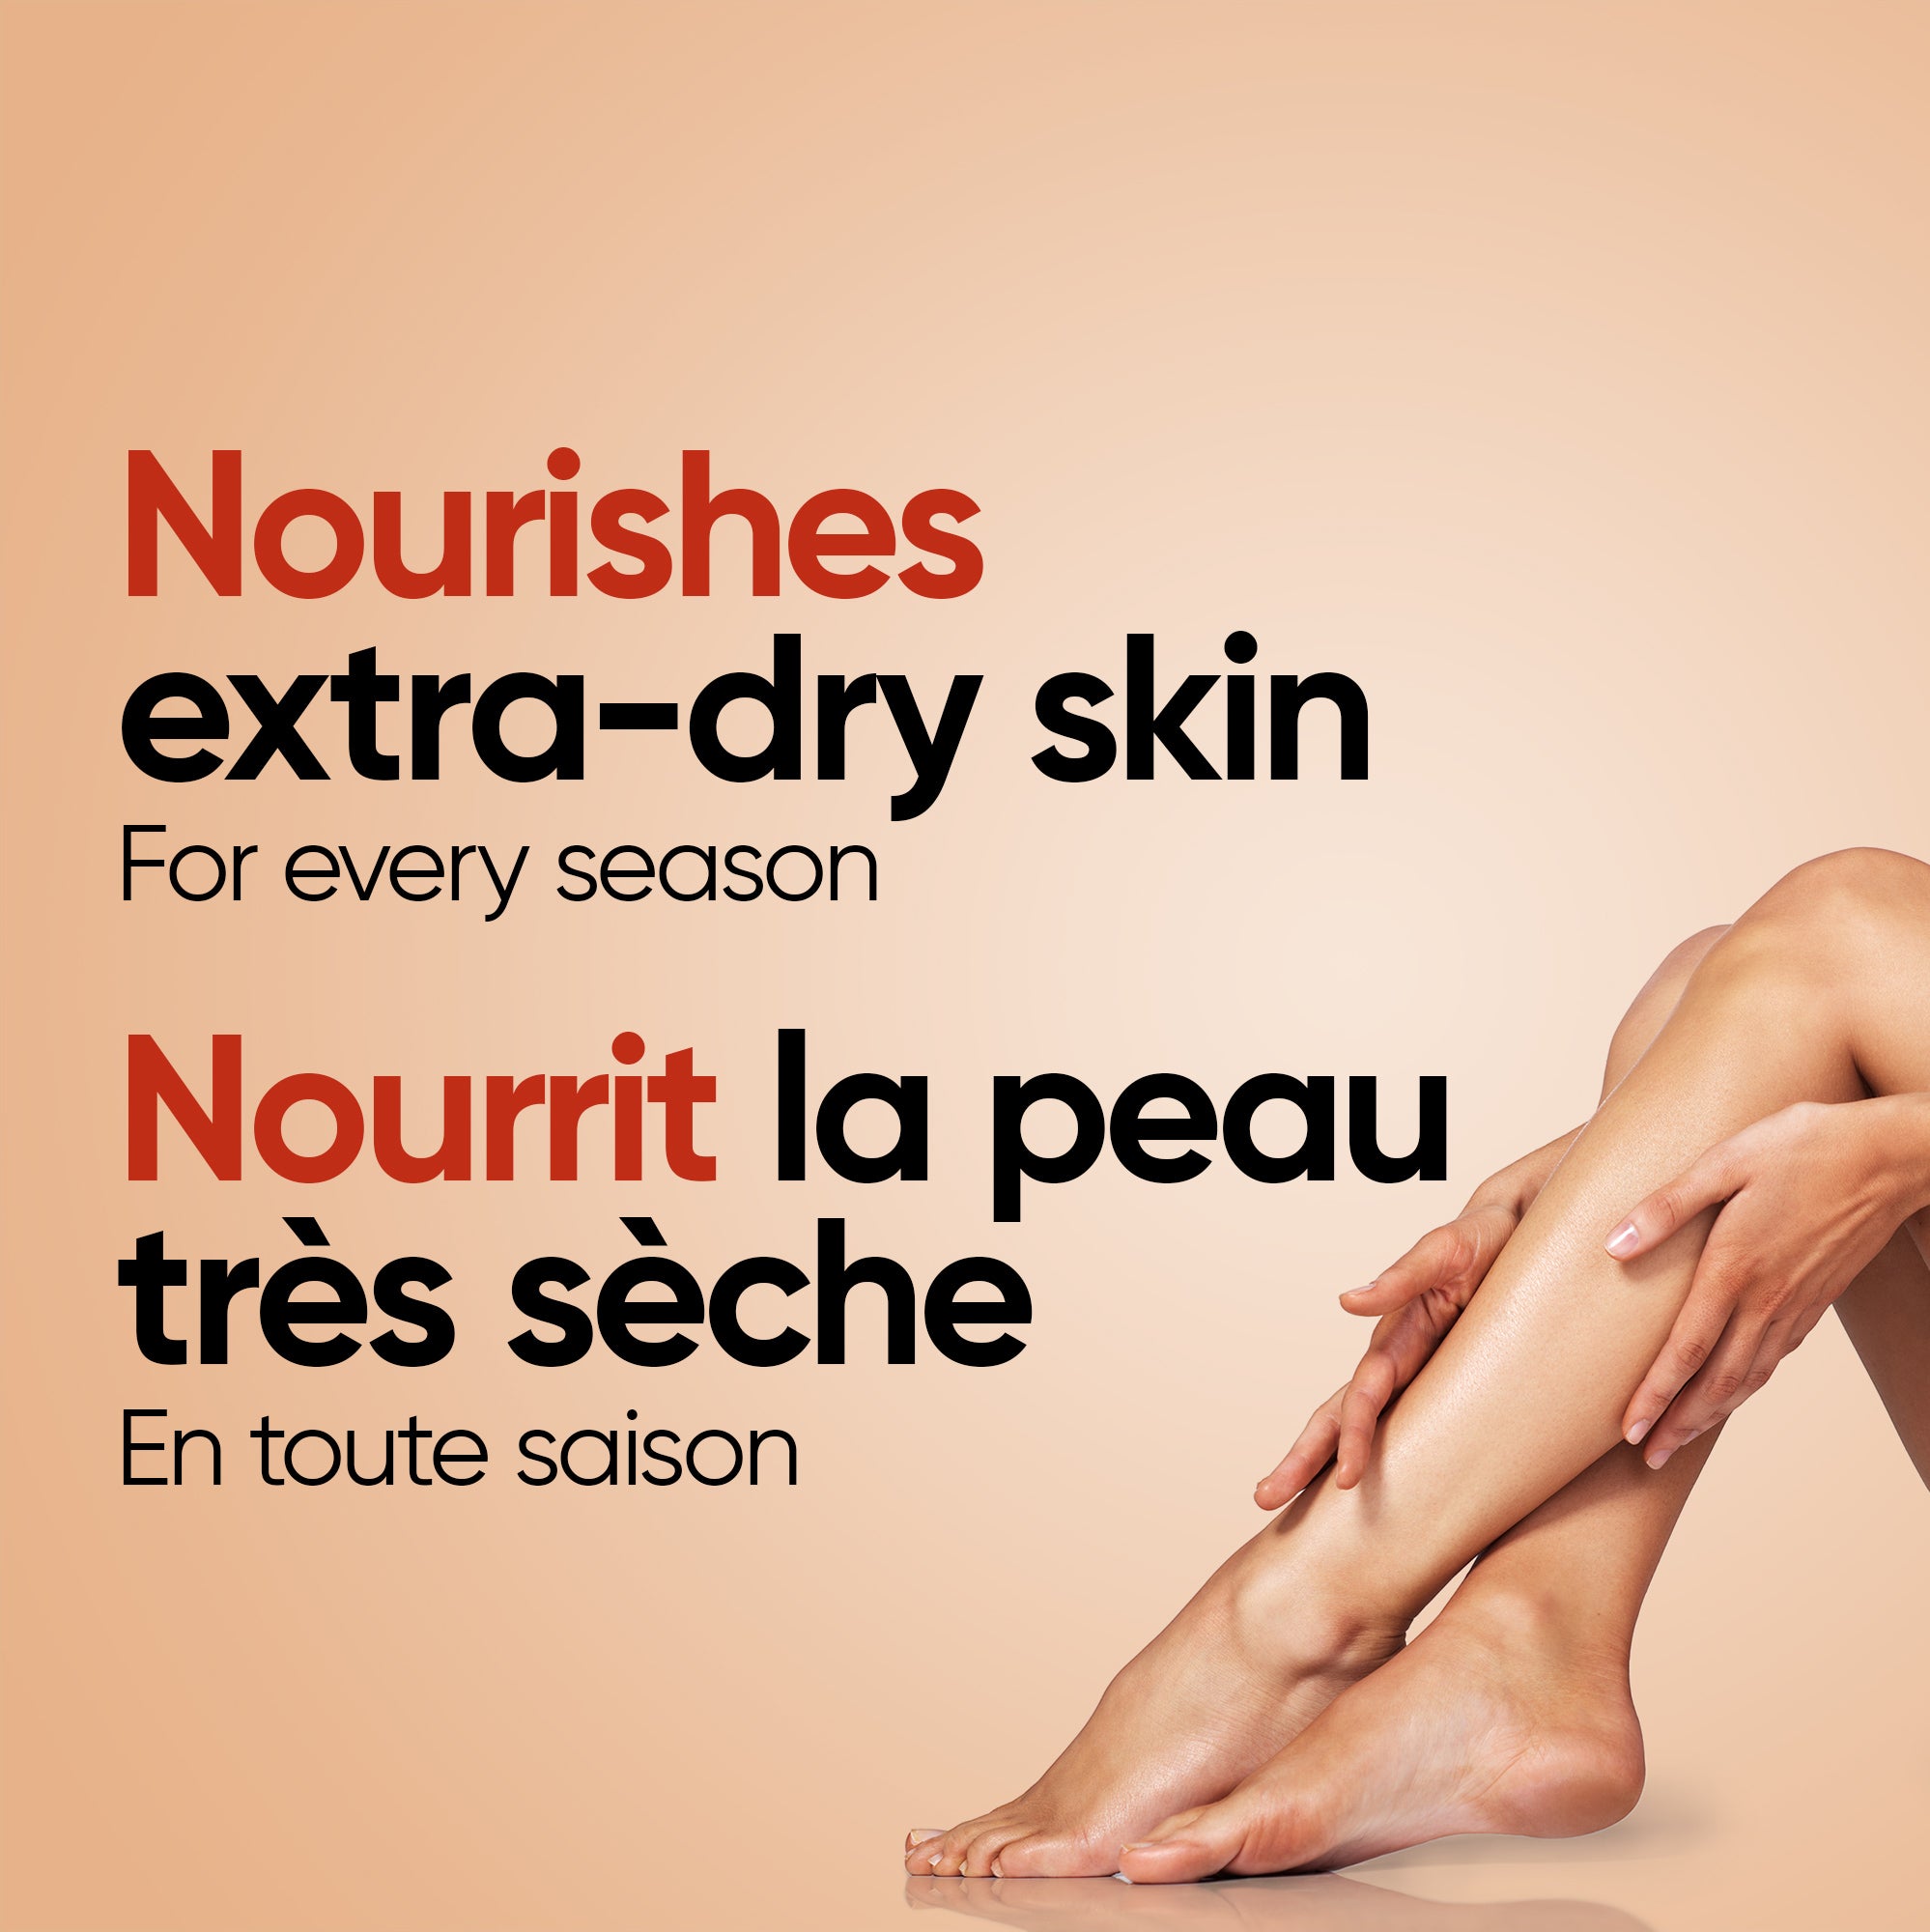 English: Nourishes extra-dry skin for every season. Français: Nourrit la peau très sèche peu importe la saison.